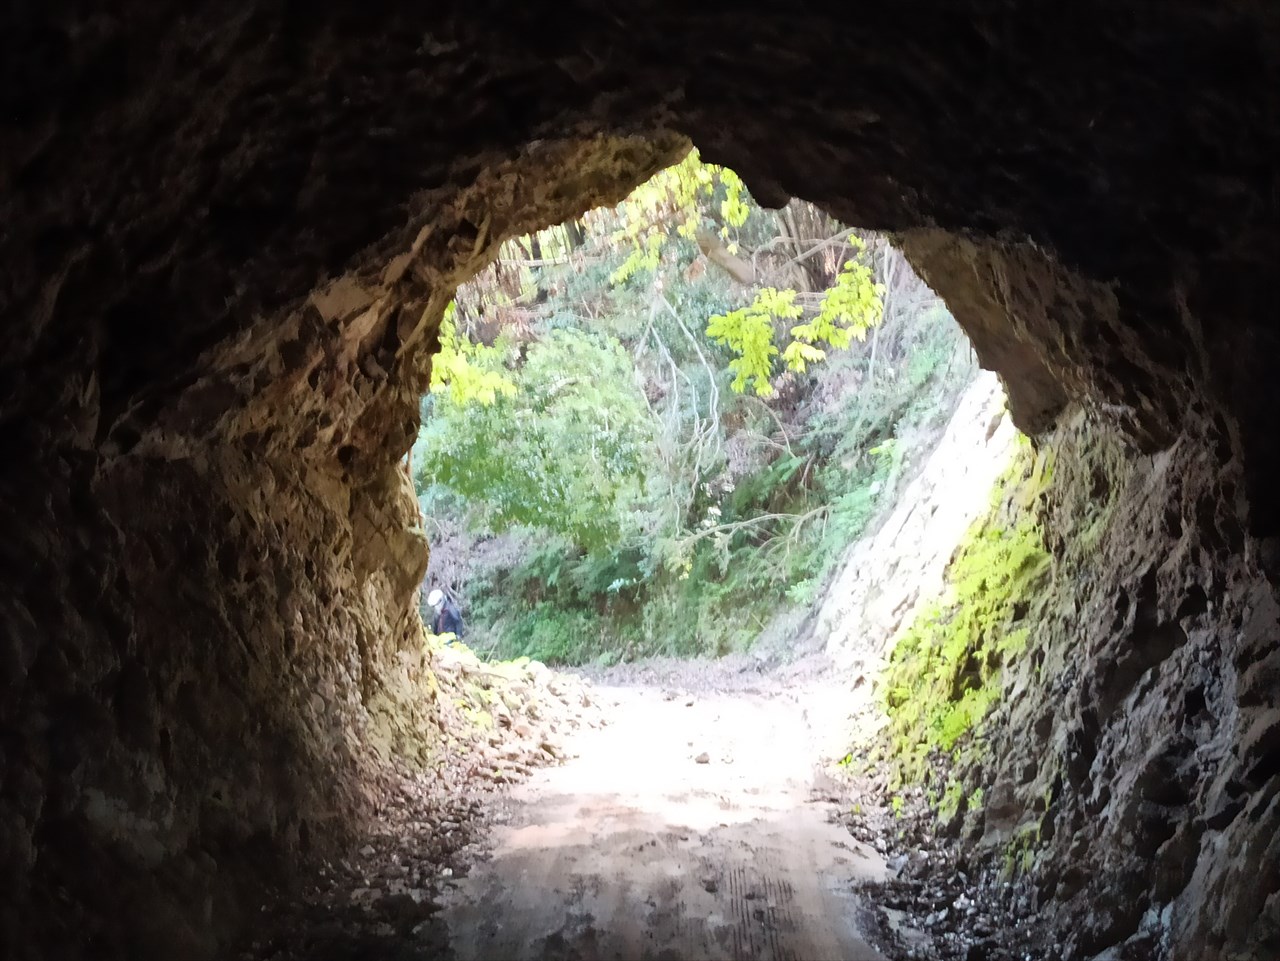 林道保田見線の３つの素掘りトンネル 房総半島素掘りトンネルナビ